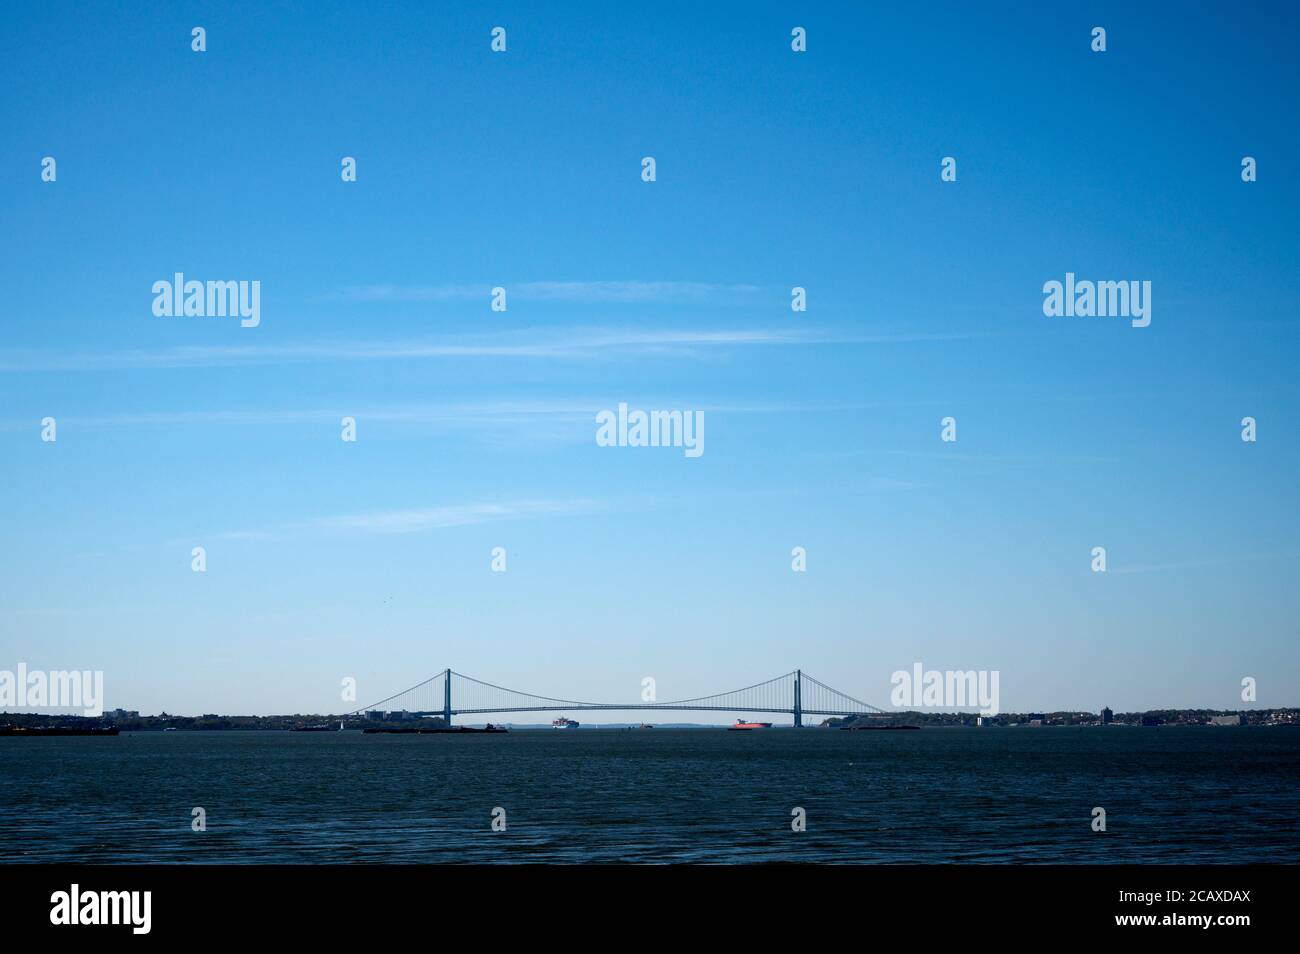 Vistas del puerto de Nueva York y del puente Verrazzano Narrows desde el Parque Estatal Liberty. Jersey City, NJ Foto de stock